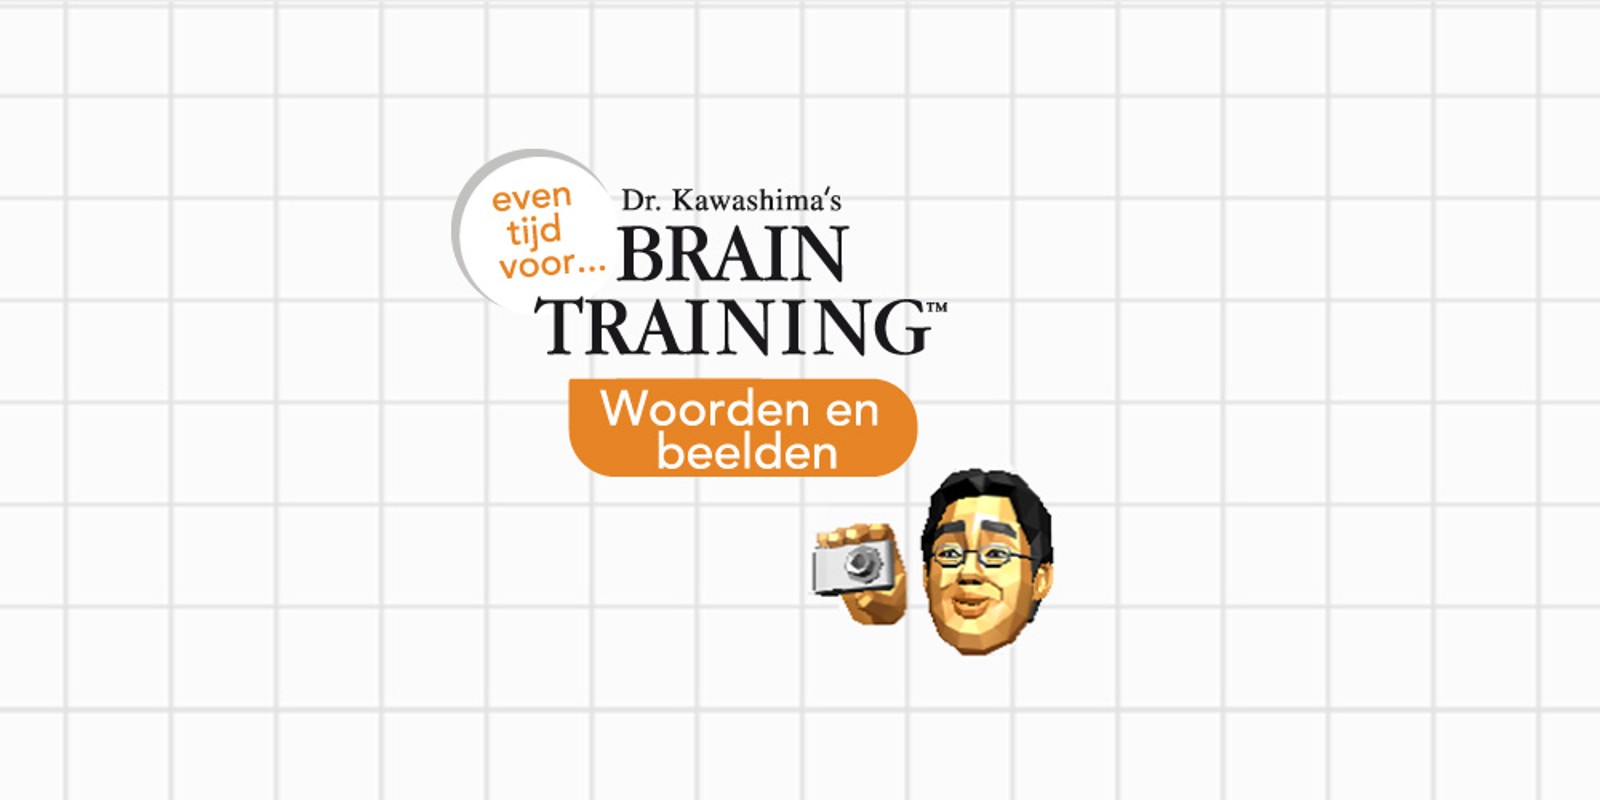 Even tijd voor... Dr Kawashima’s Brain Training™: Woorden en beelden